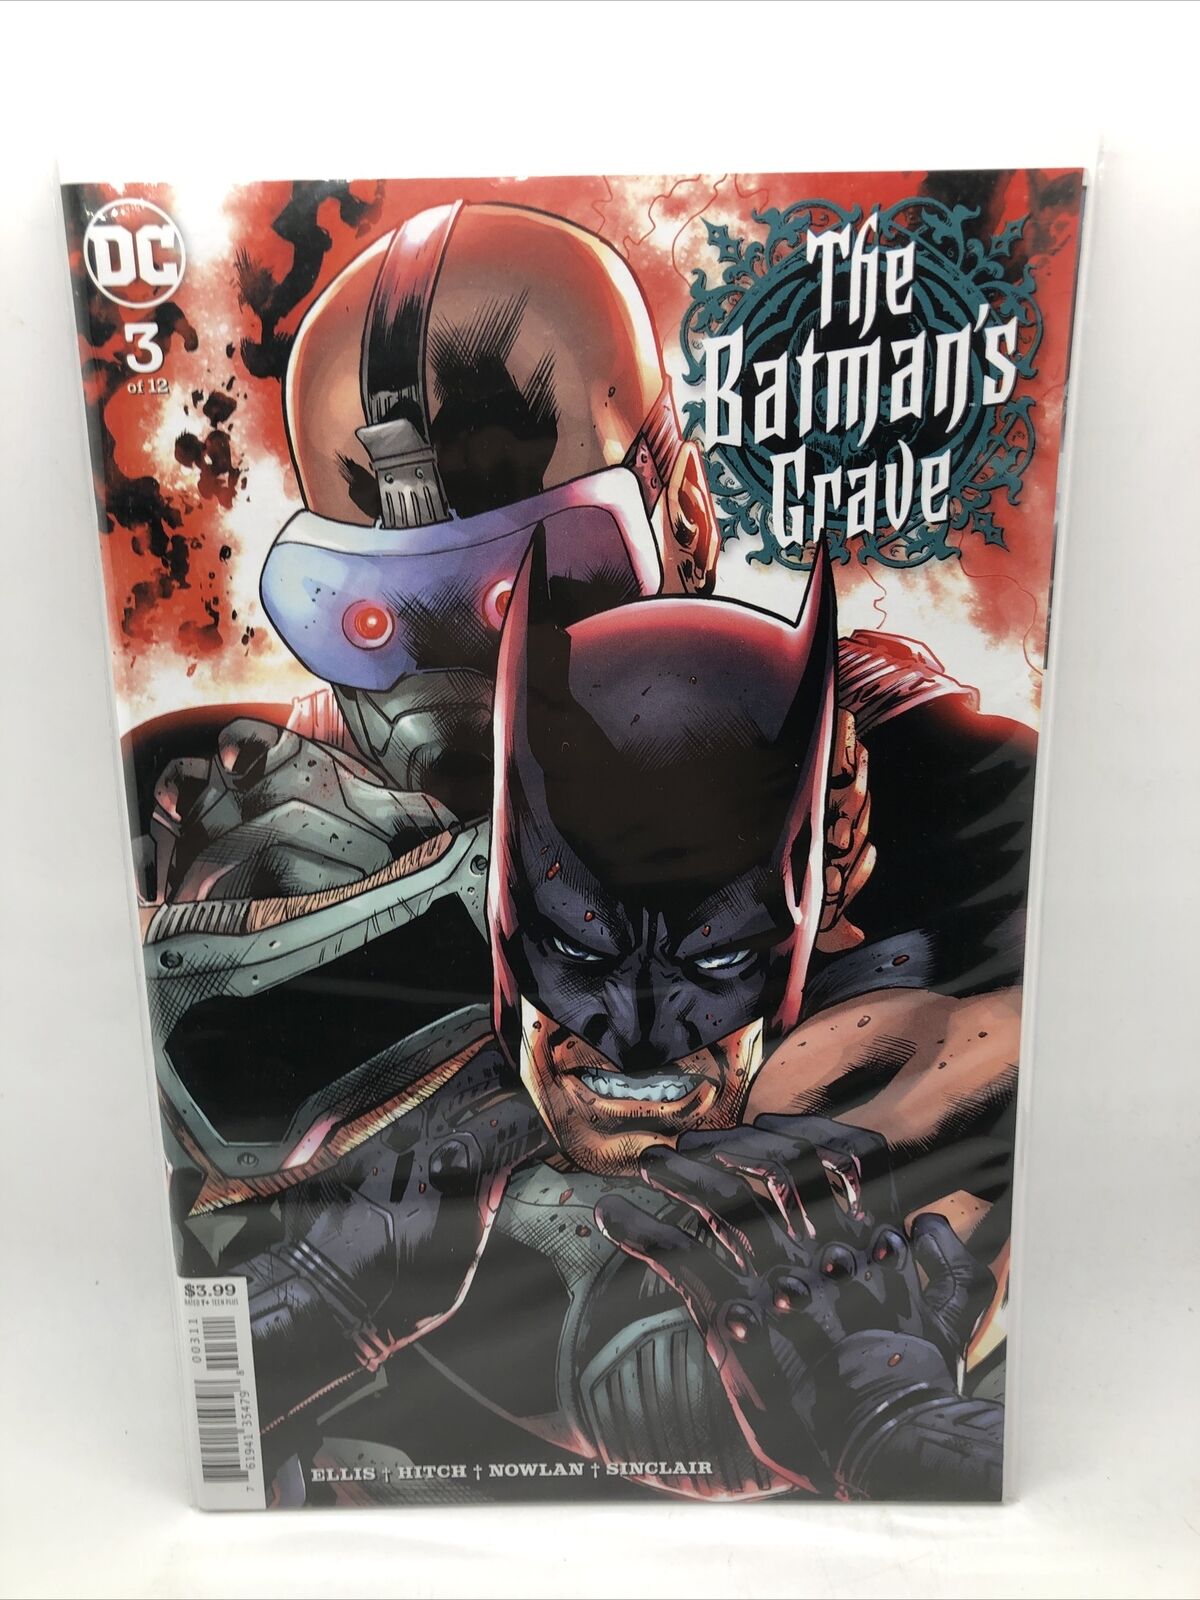 The Batman's Grave #3 A Cover DC Comics Book